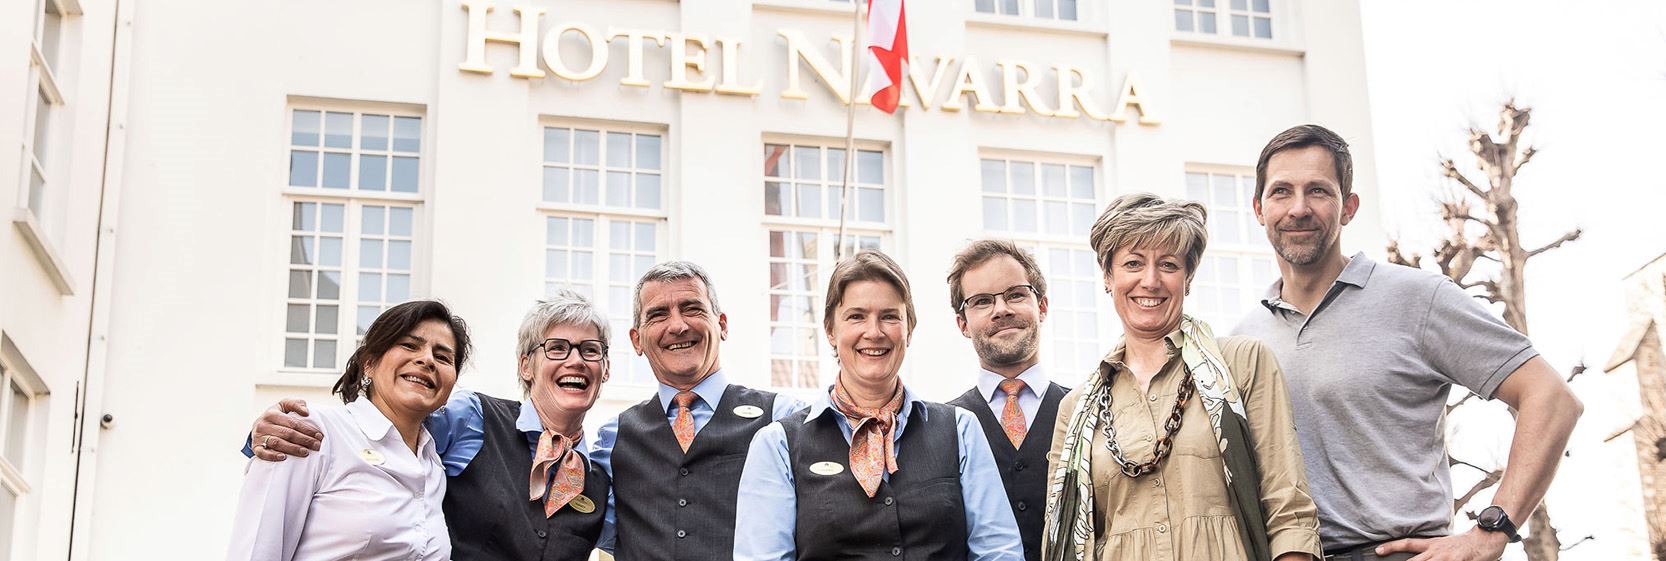 Hotel Navarra Bruges Our Team